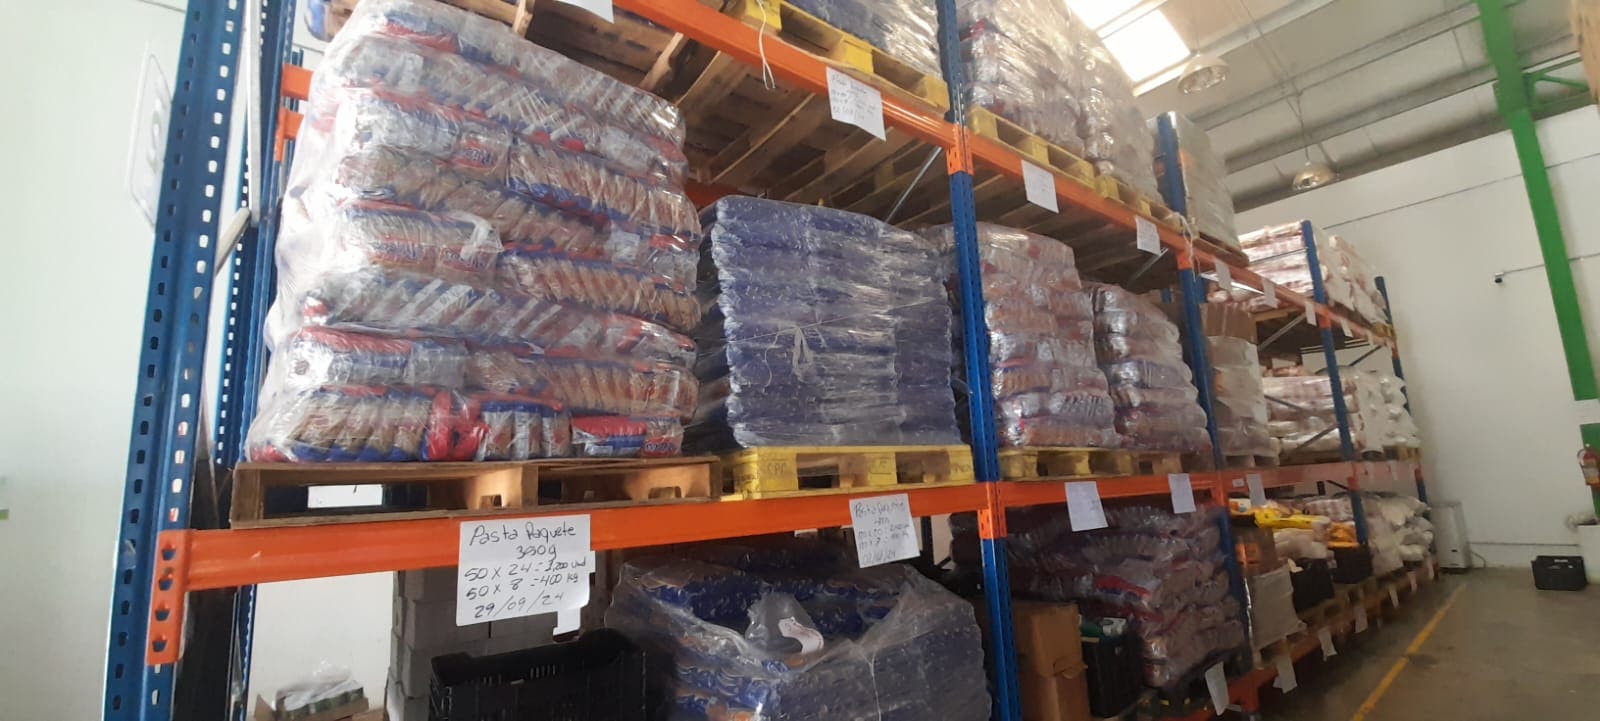 Banco de Alimentos rompe récord en kilos rescatados y distribuidos